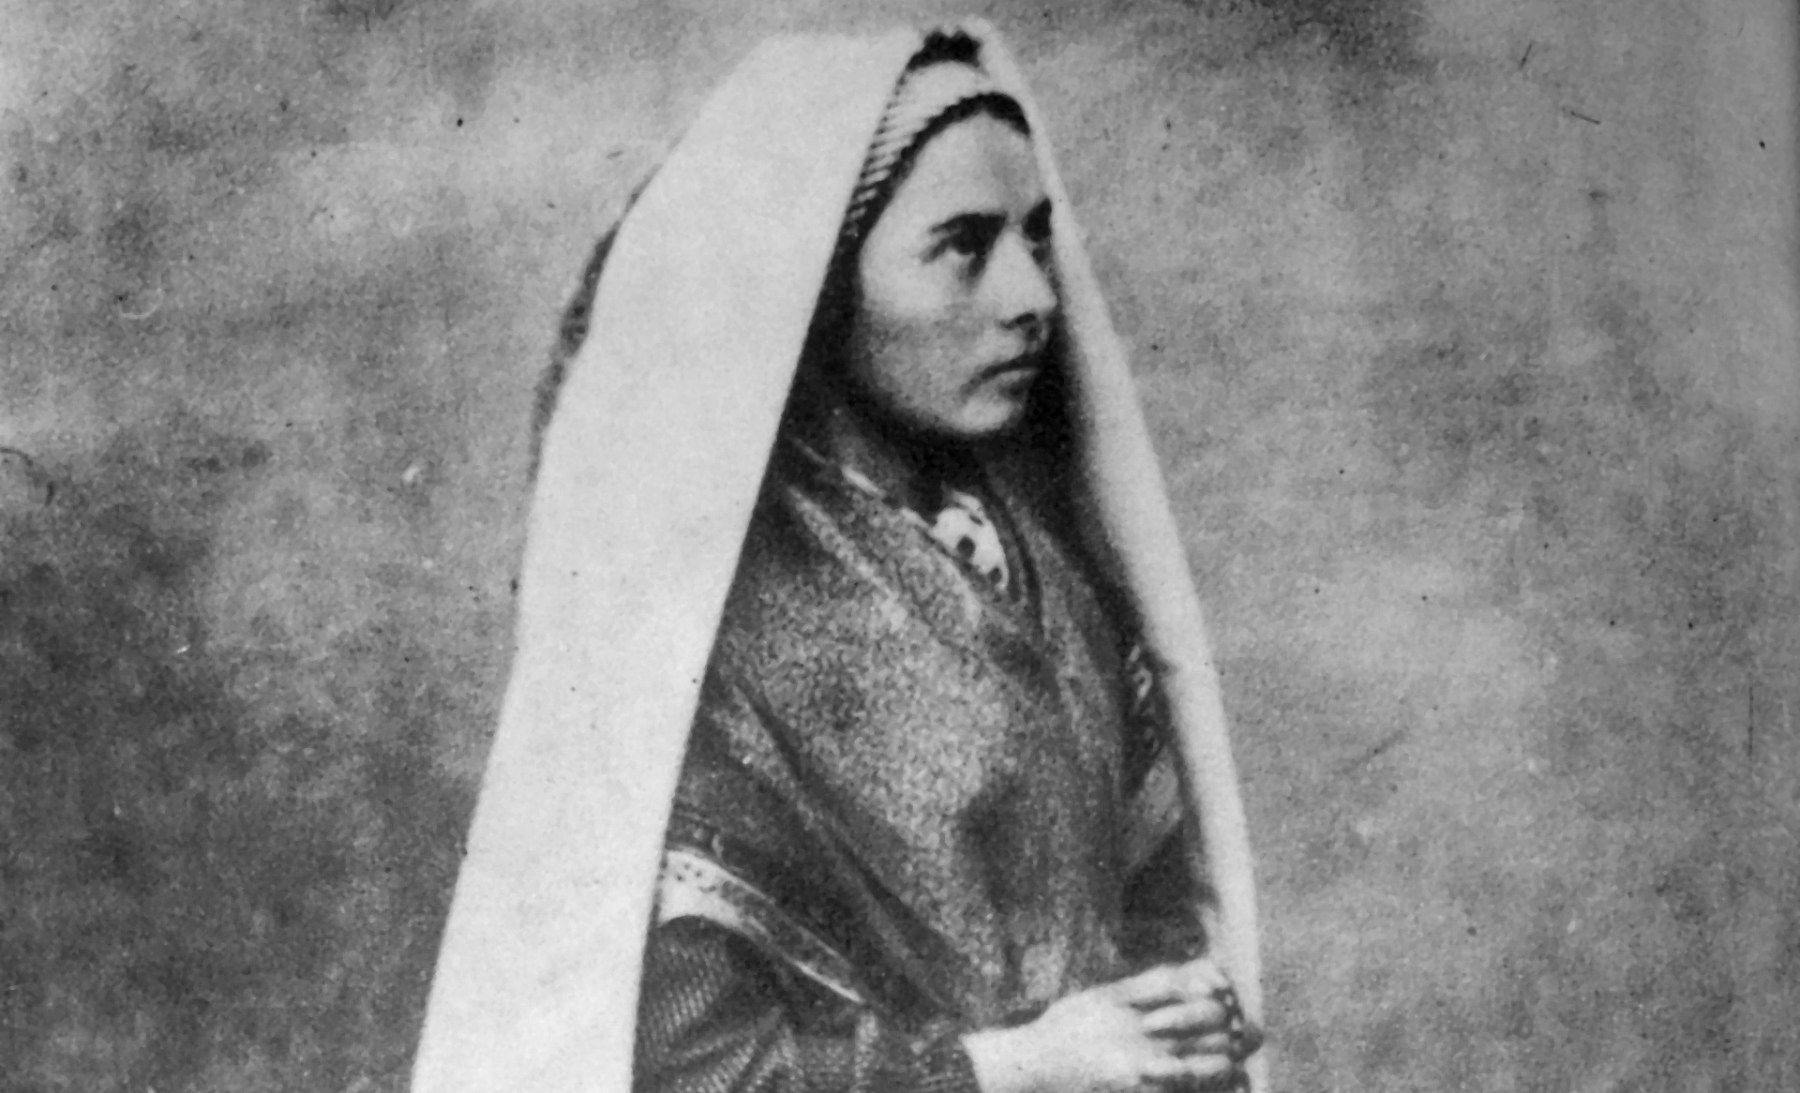 Bernadette Soubirous kneeling with rosary in her hands